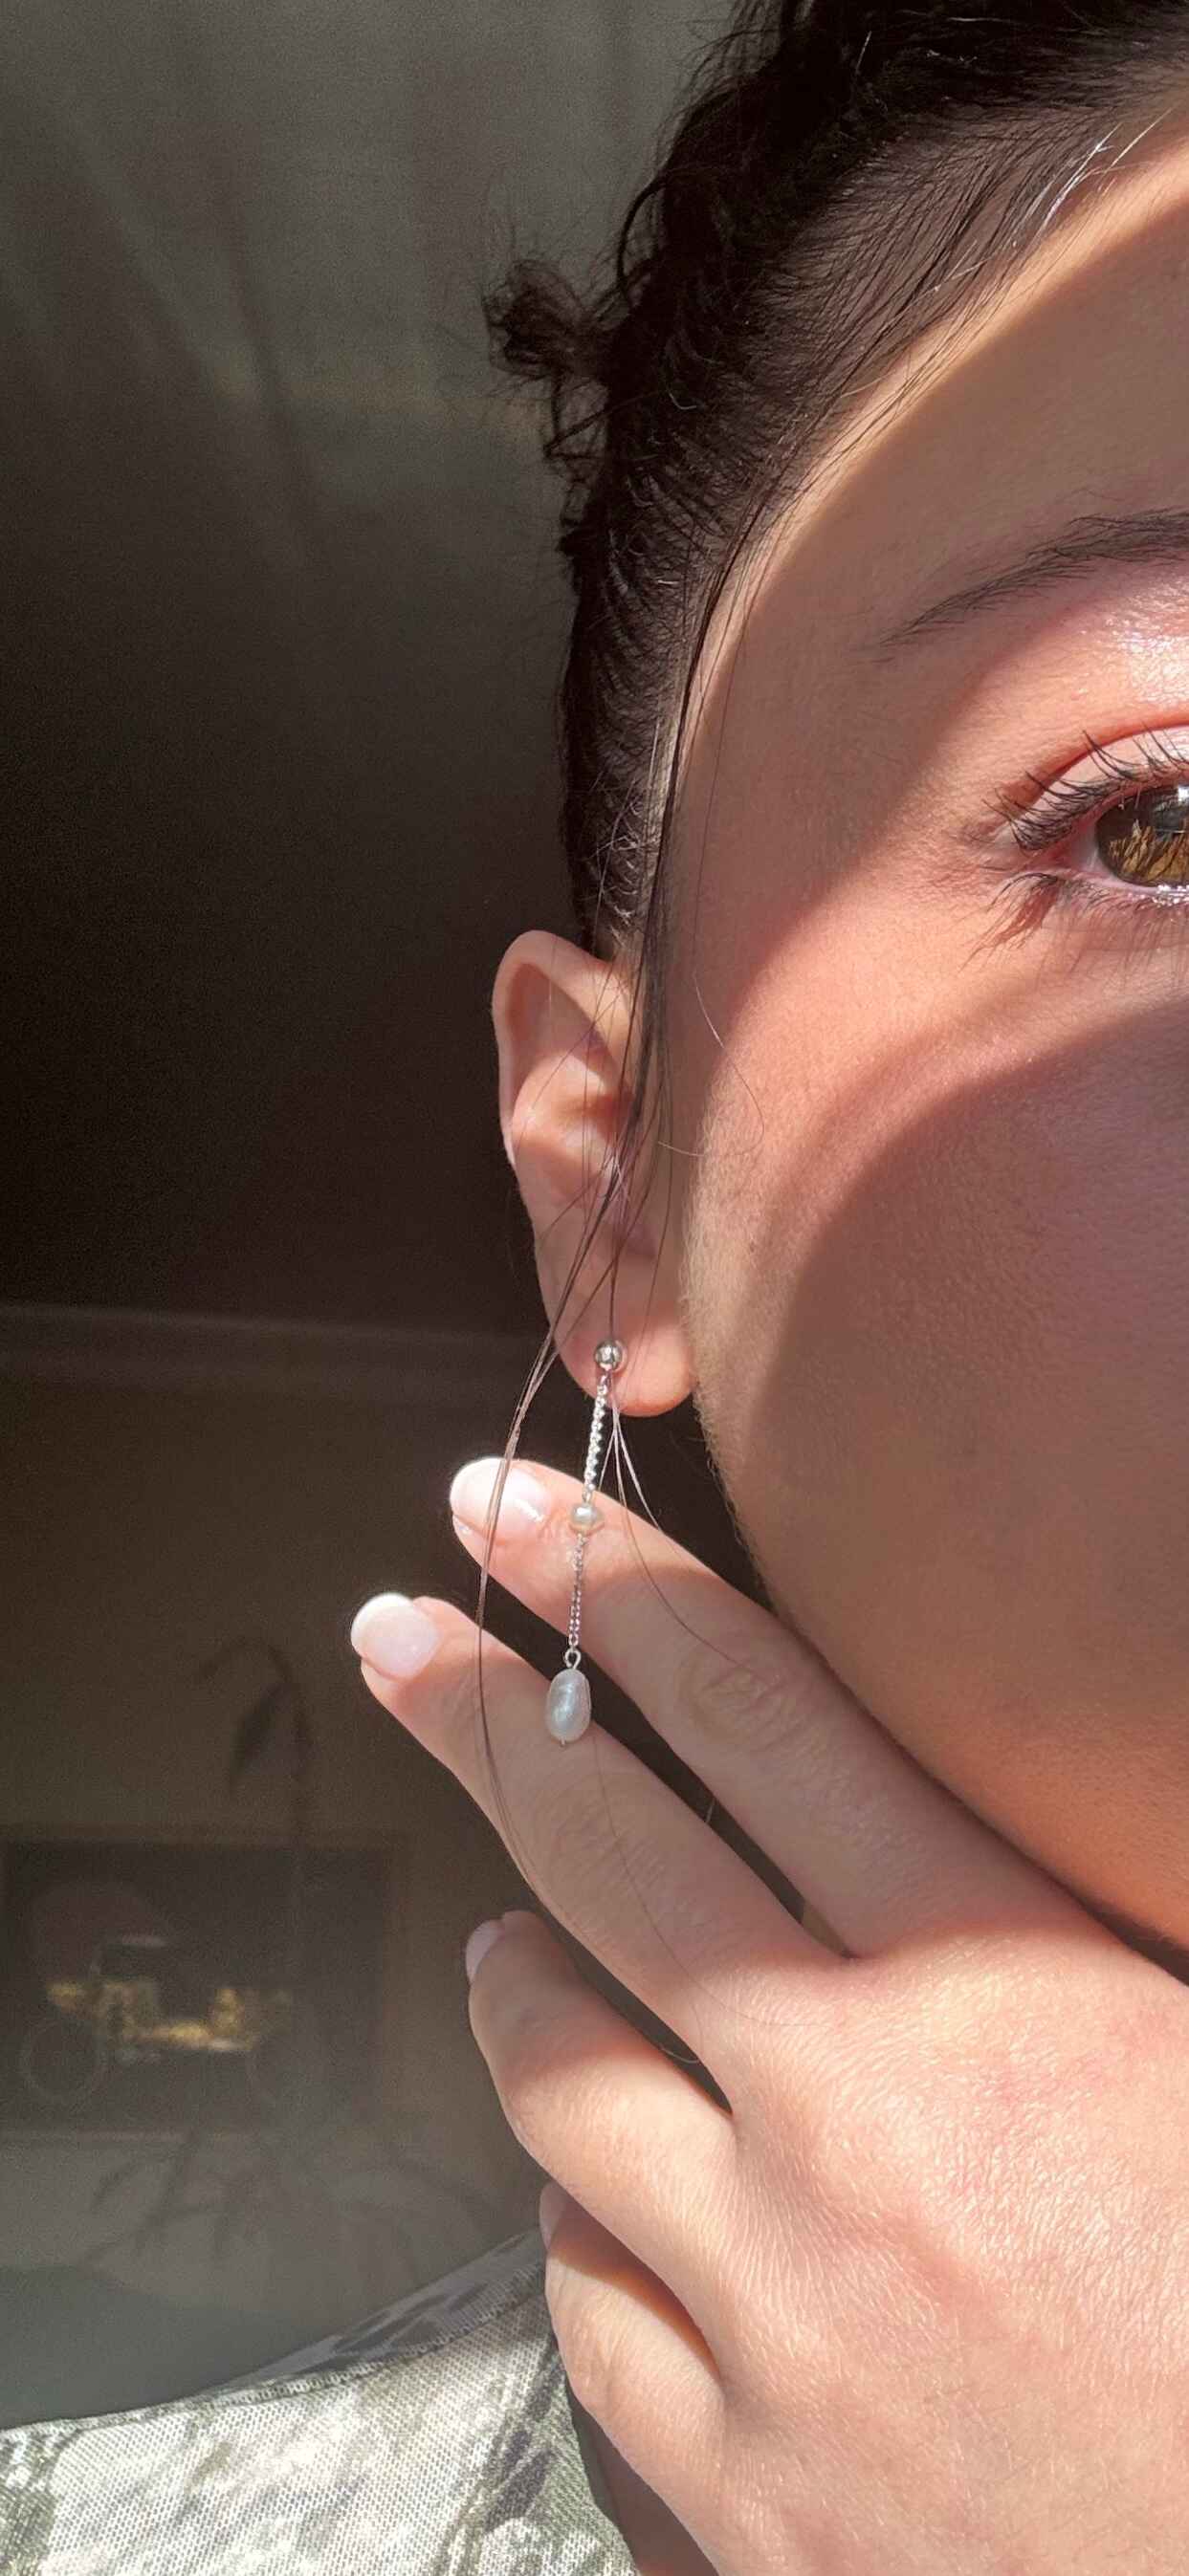 14k Gold Pearl Drop Earrings